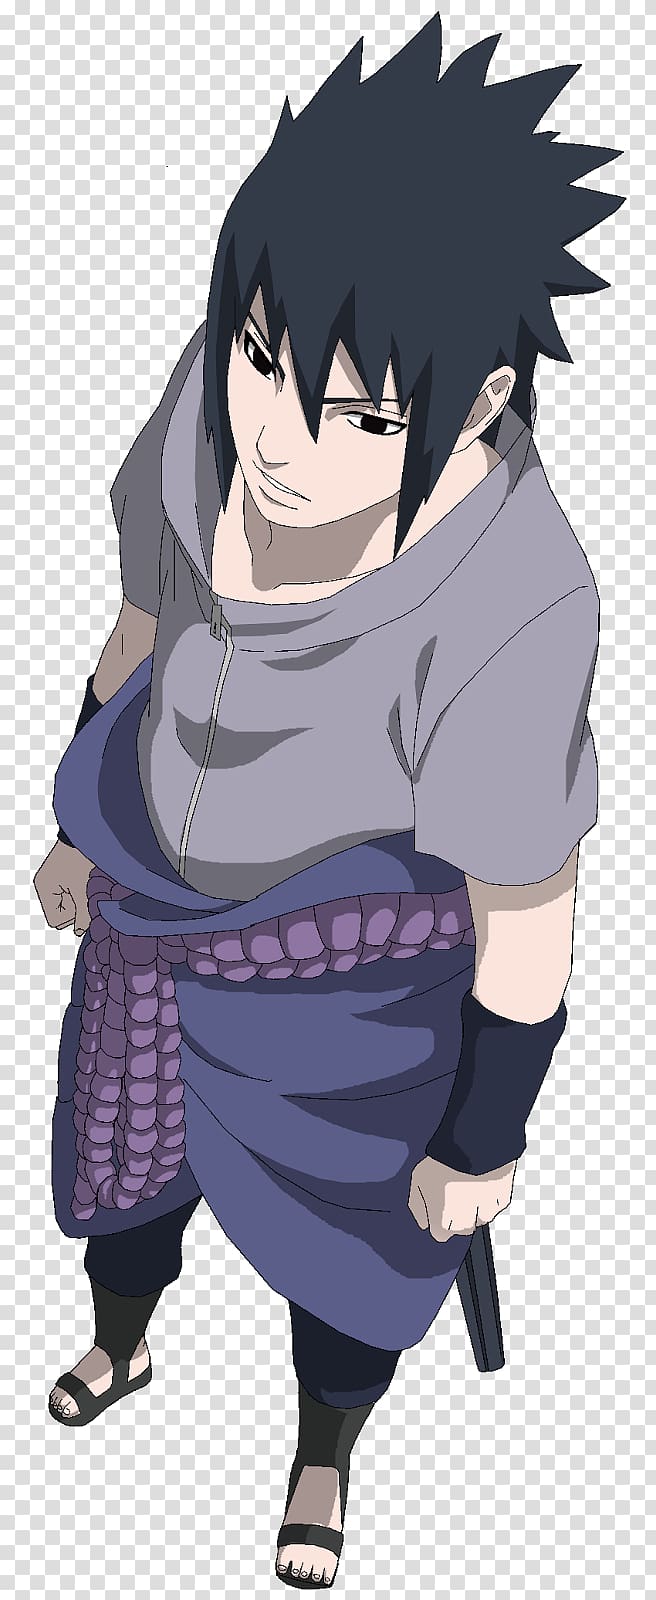 Sasuke Uchiha Naruto Uzumaki Sakura Haruno Itachi Uchiha Anime, indra sasuke transparent background PNG clipart